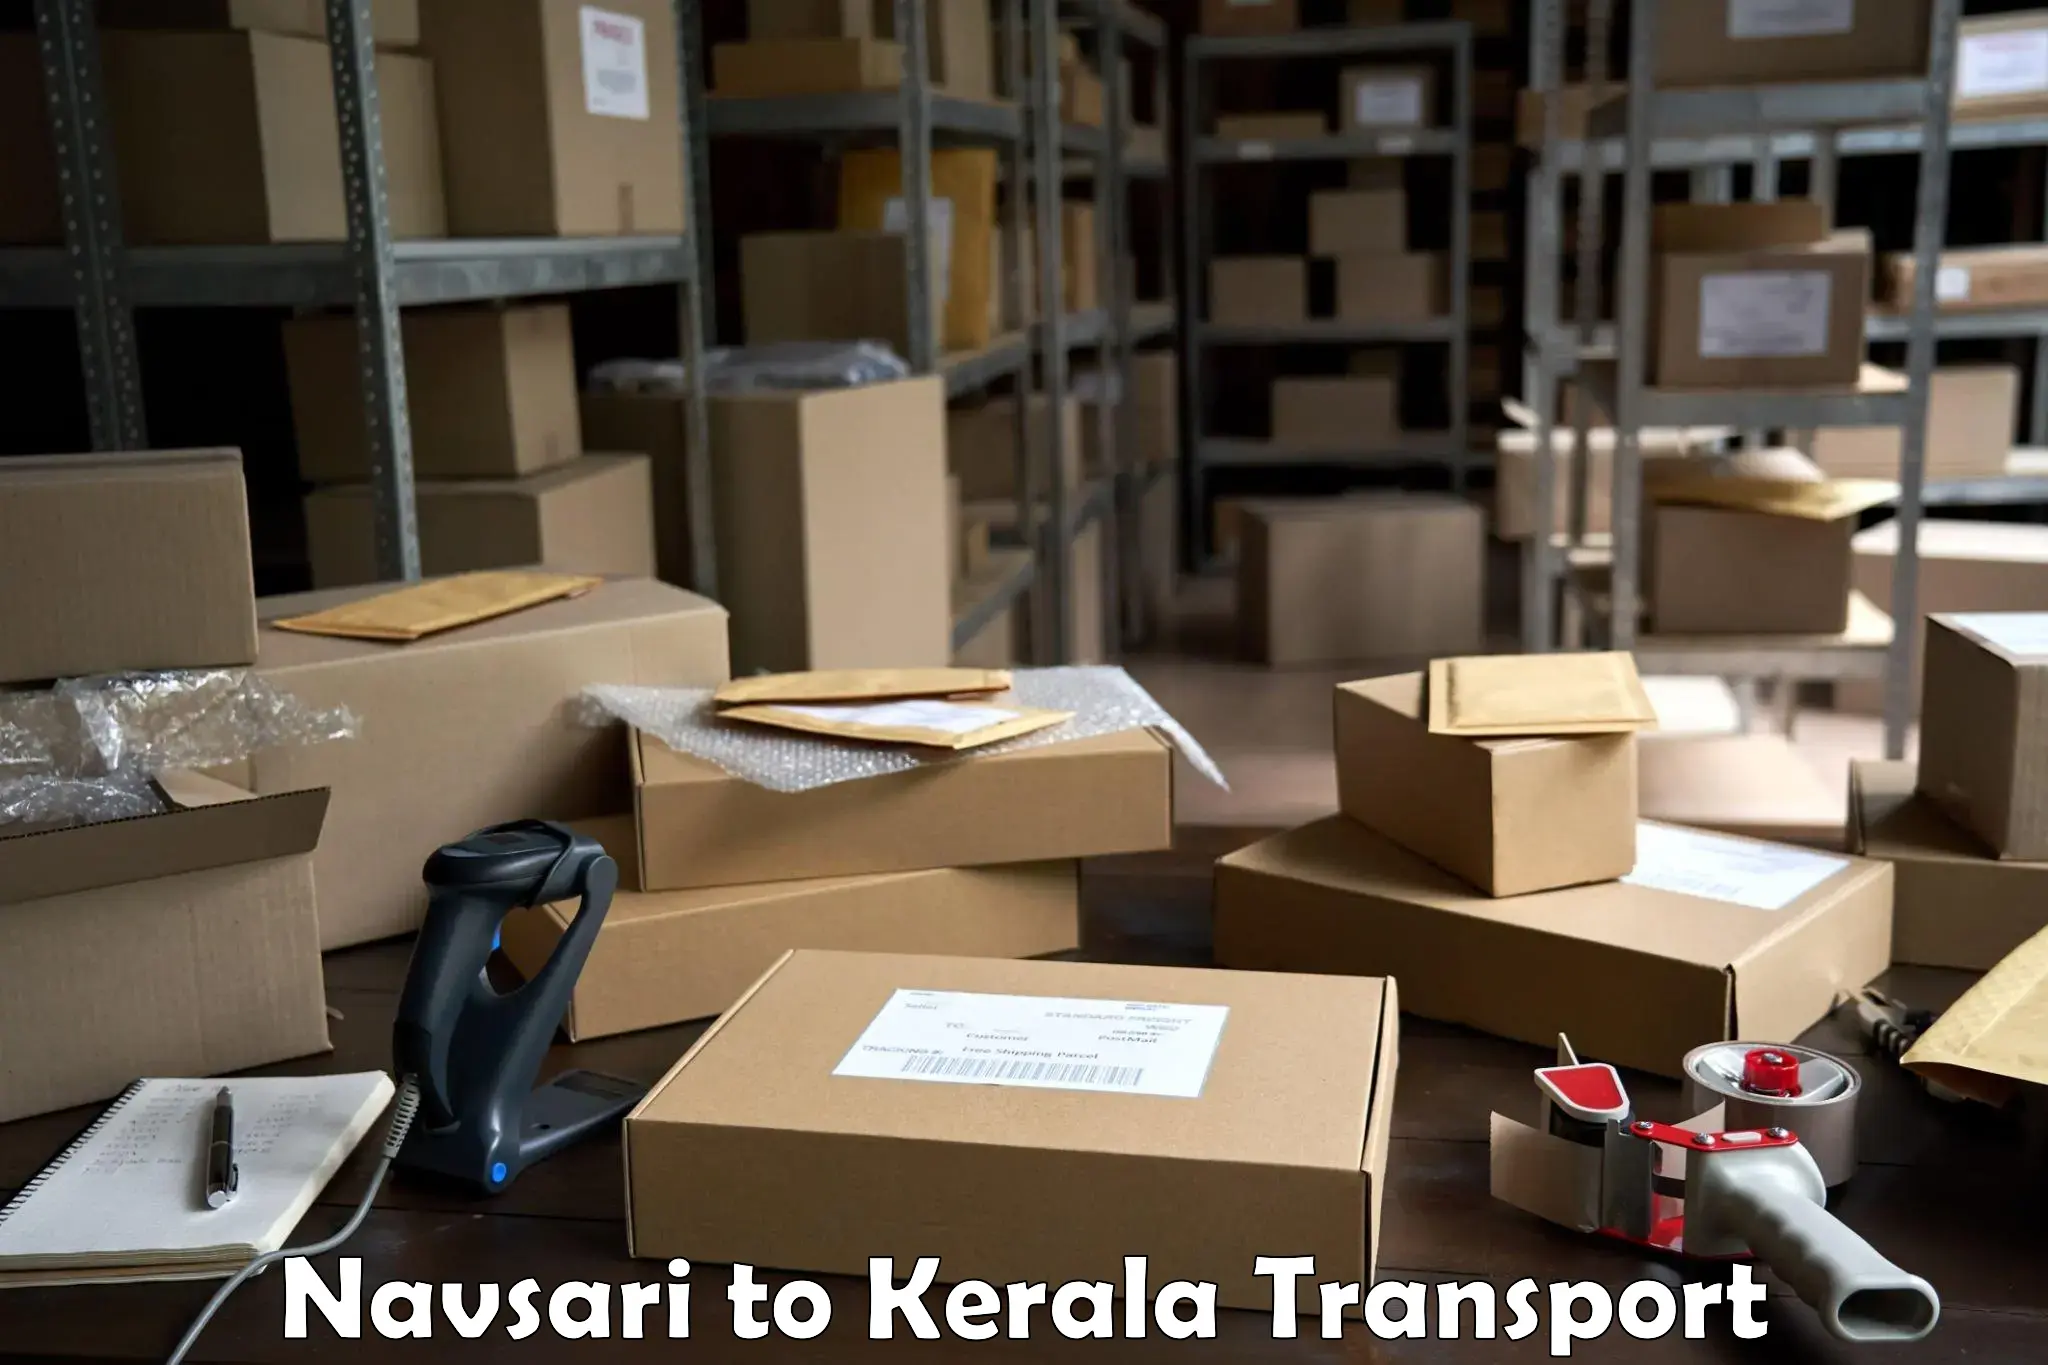 Delivery service Navsari to Kollam